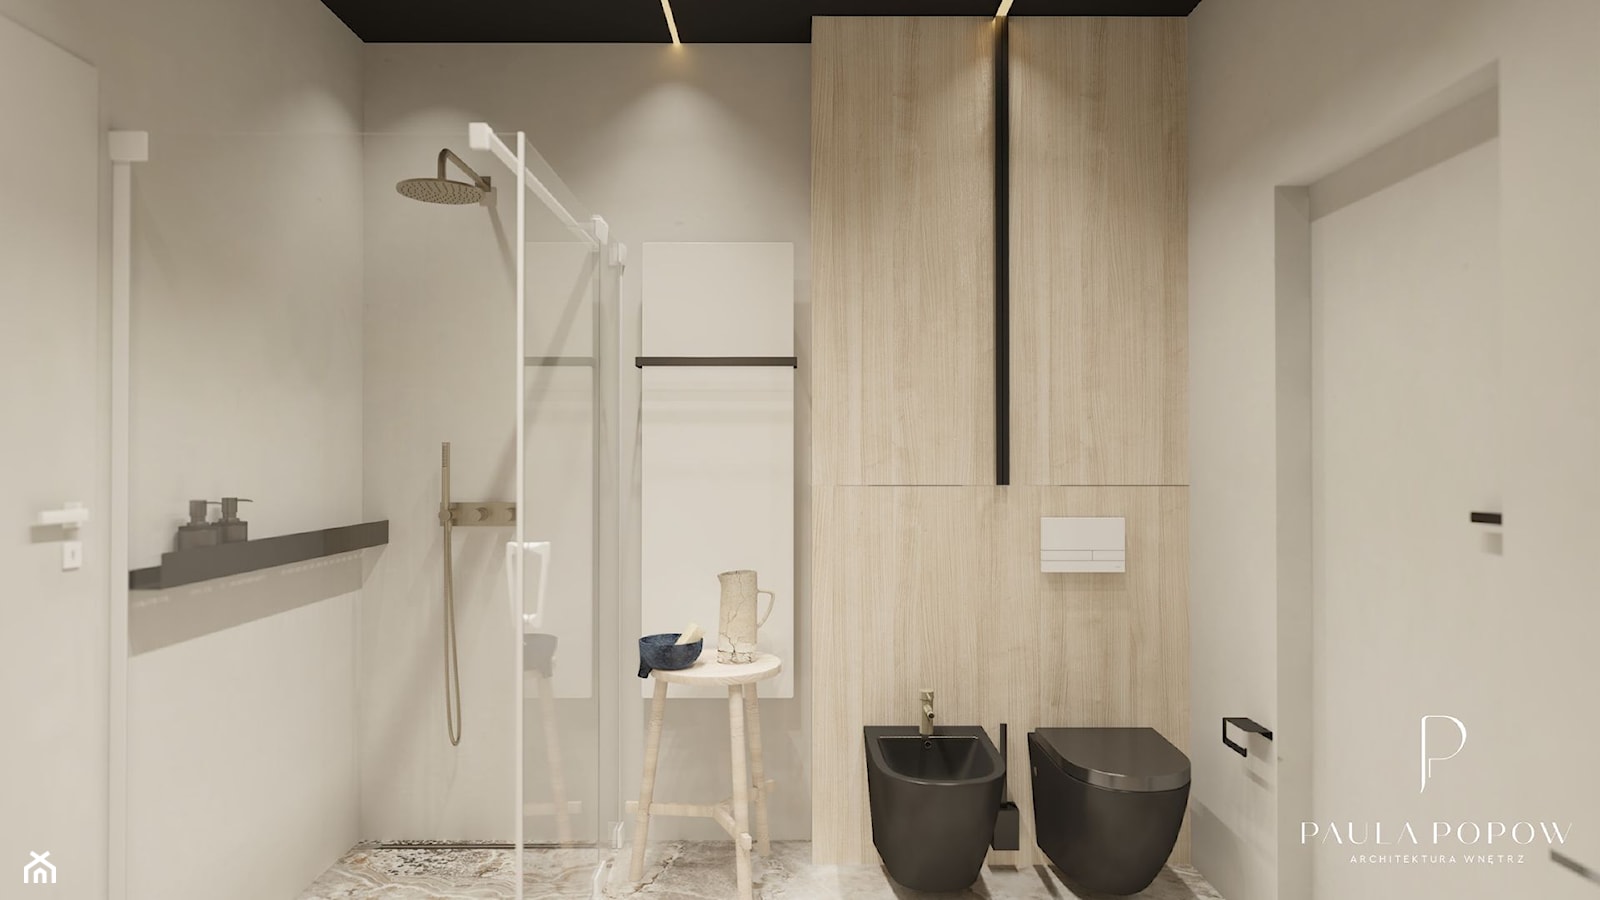 kremowa łazienka japandi, jasne drewno, czarne dodatki, złoto matowe, mikrocement, mikrobeton - zdjęcie od Paula Popow projektowanie wnętrz - Homebook